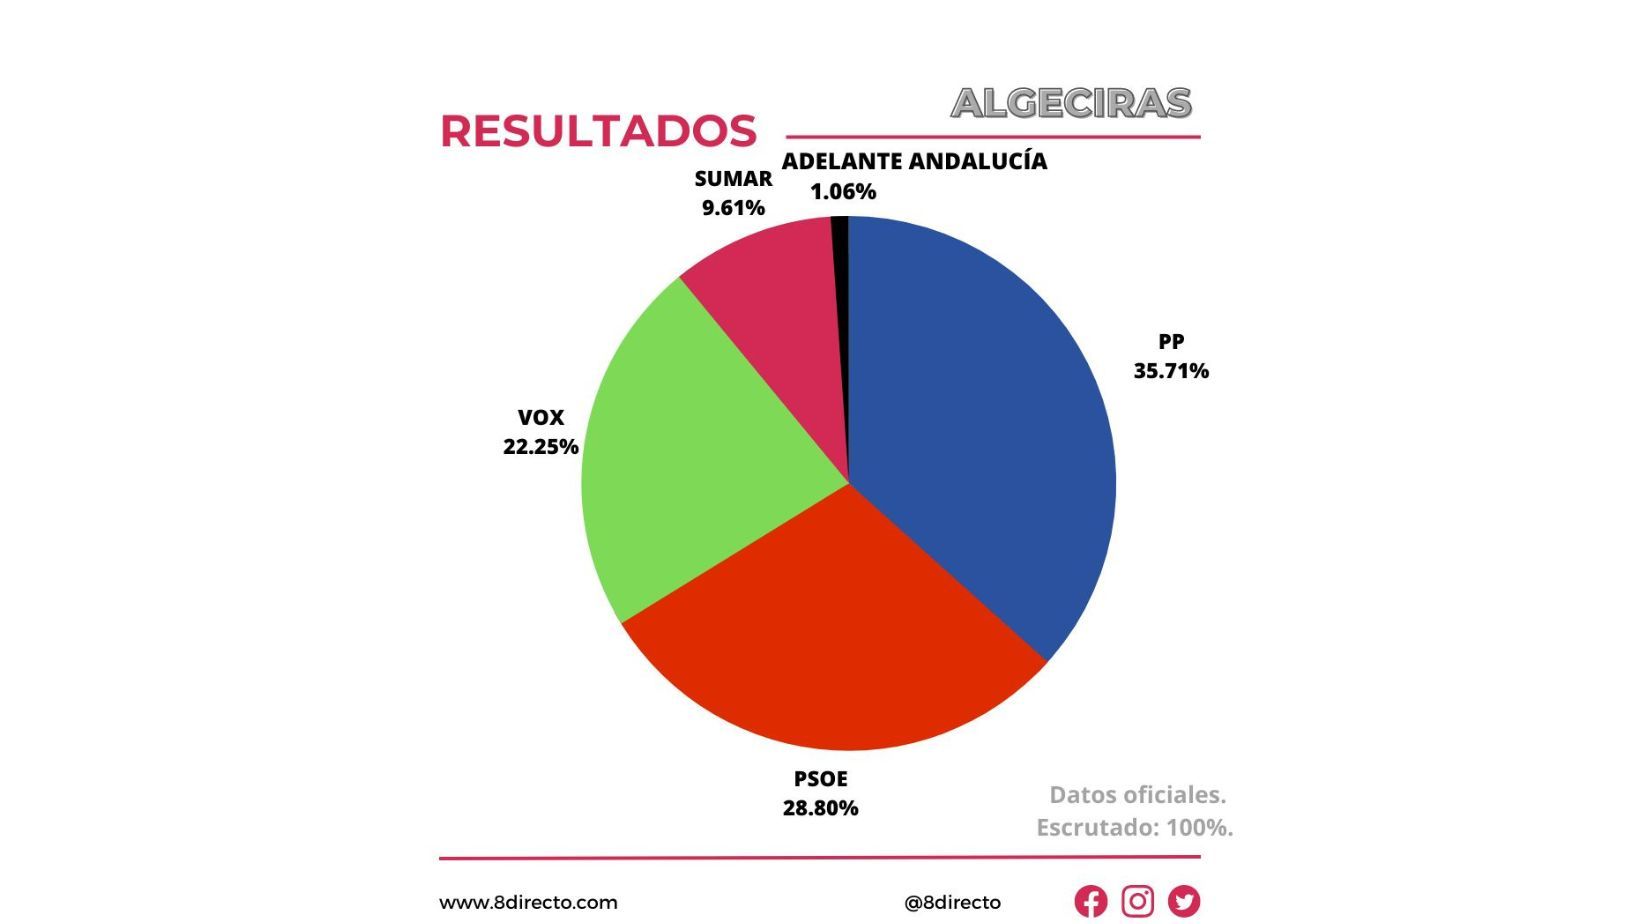 El PP gana las elecciones en Algeciras y VOX queda relegada a un tercer lugar